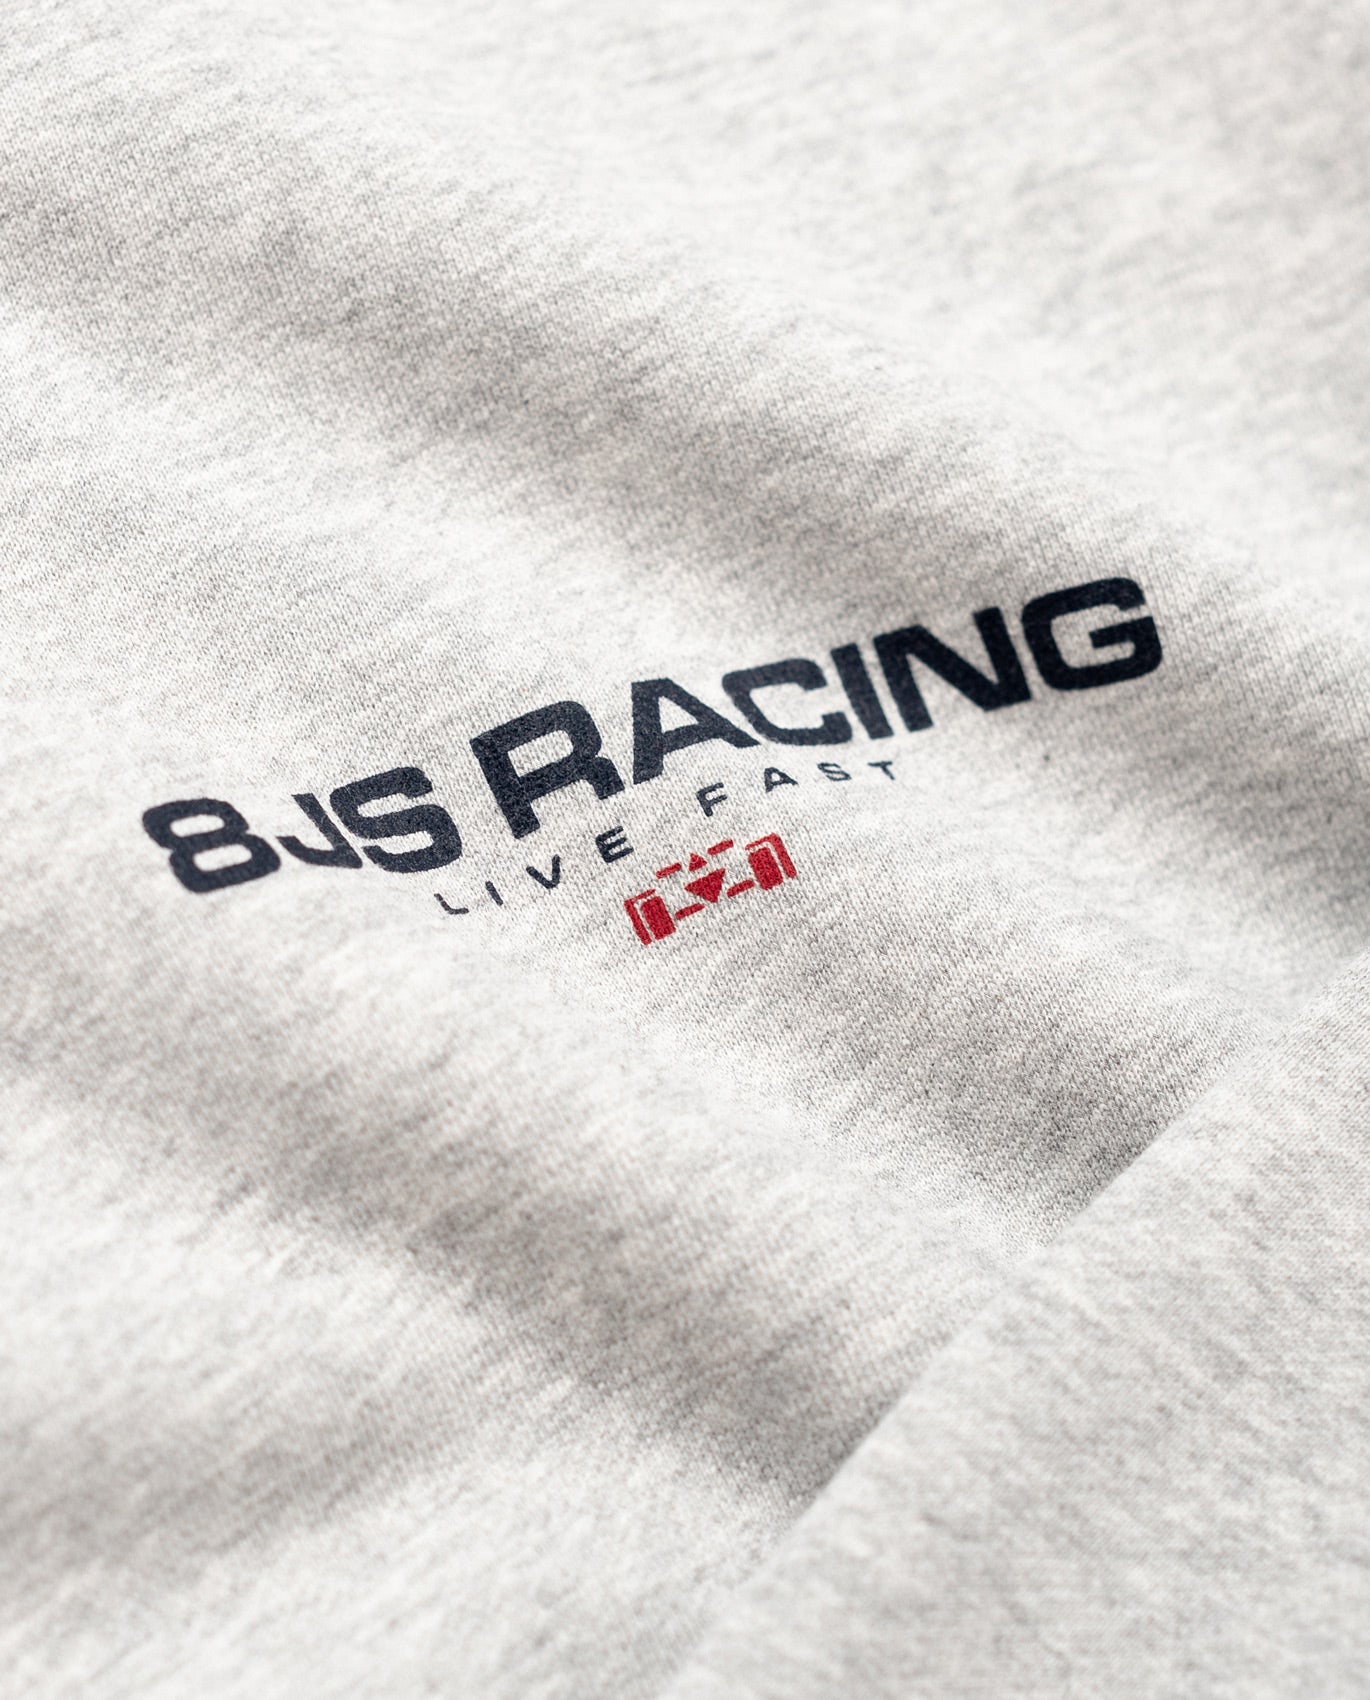 8JS Racing Half Zip Sweatshirt - 8JS